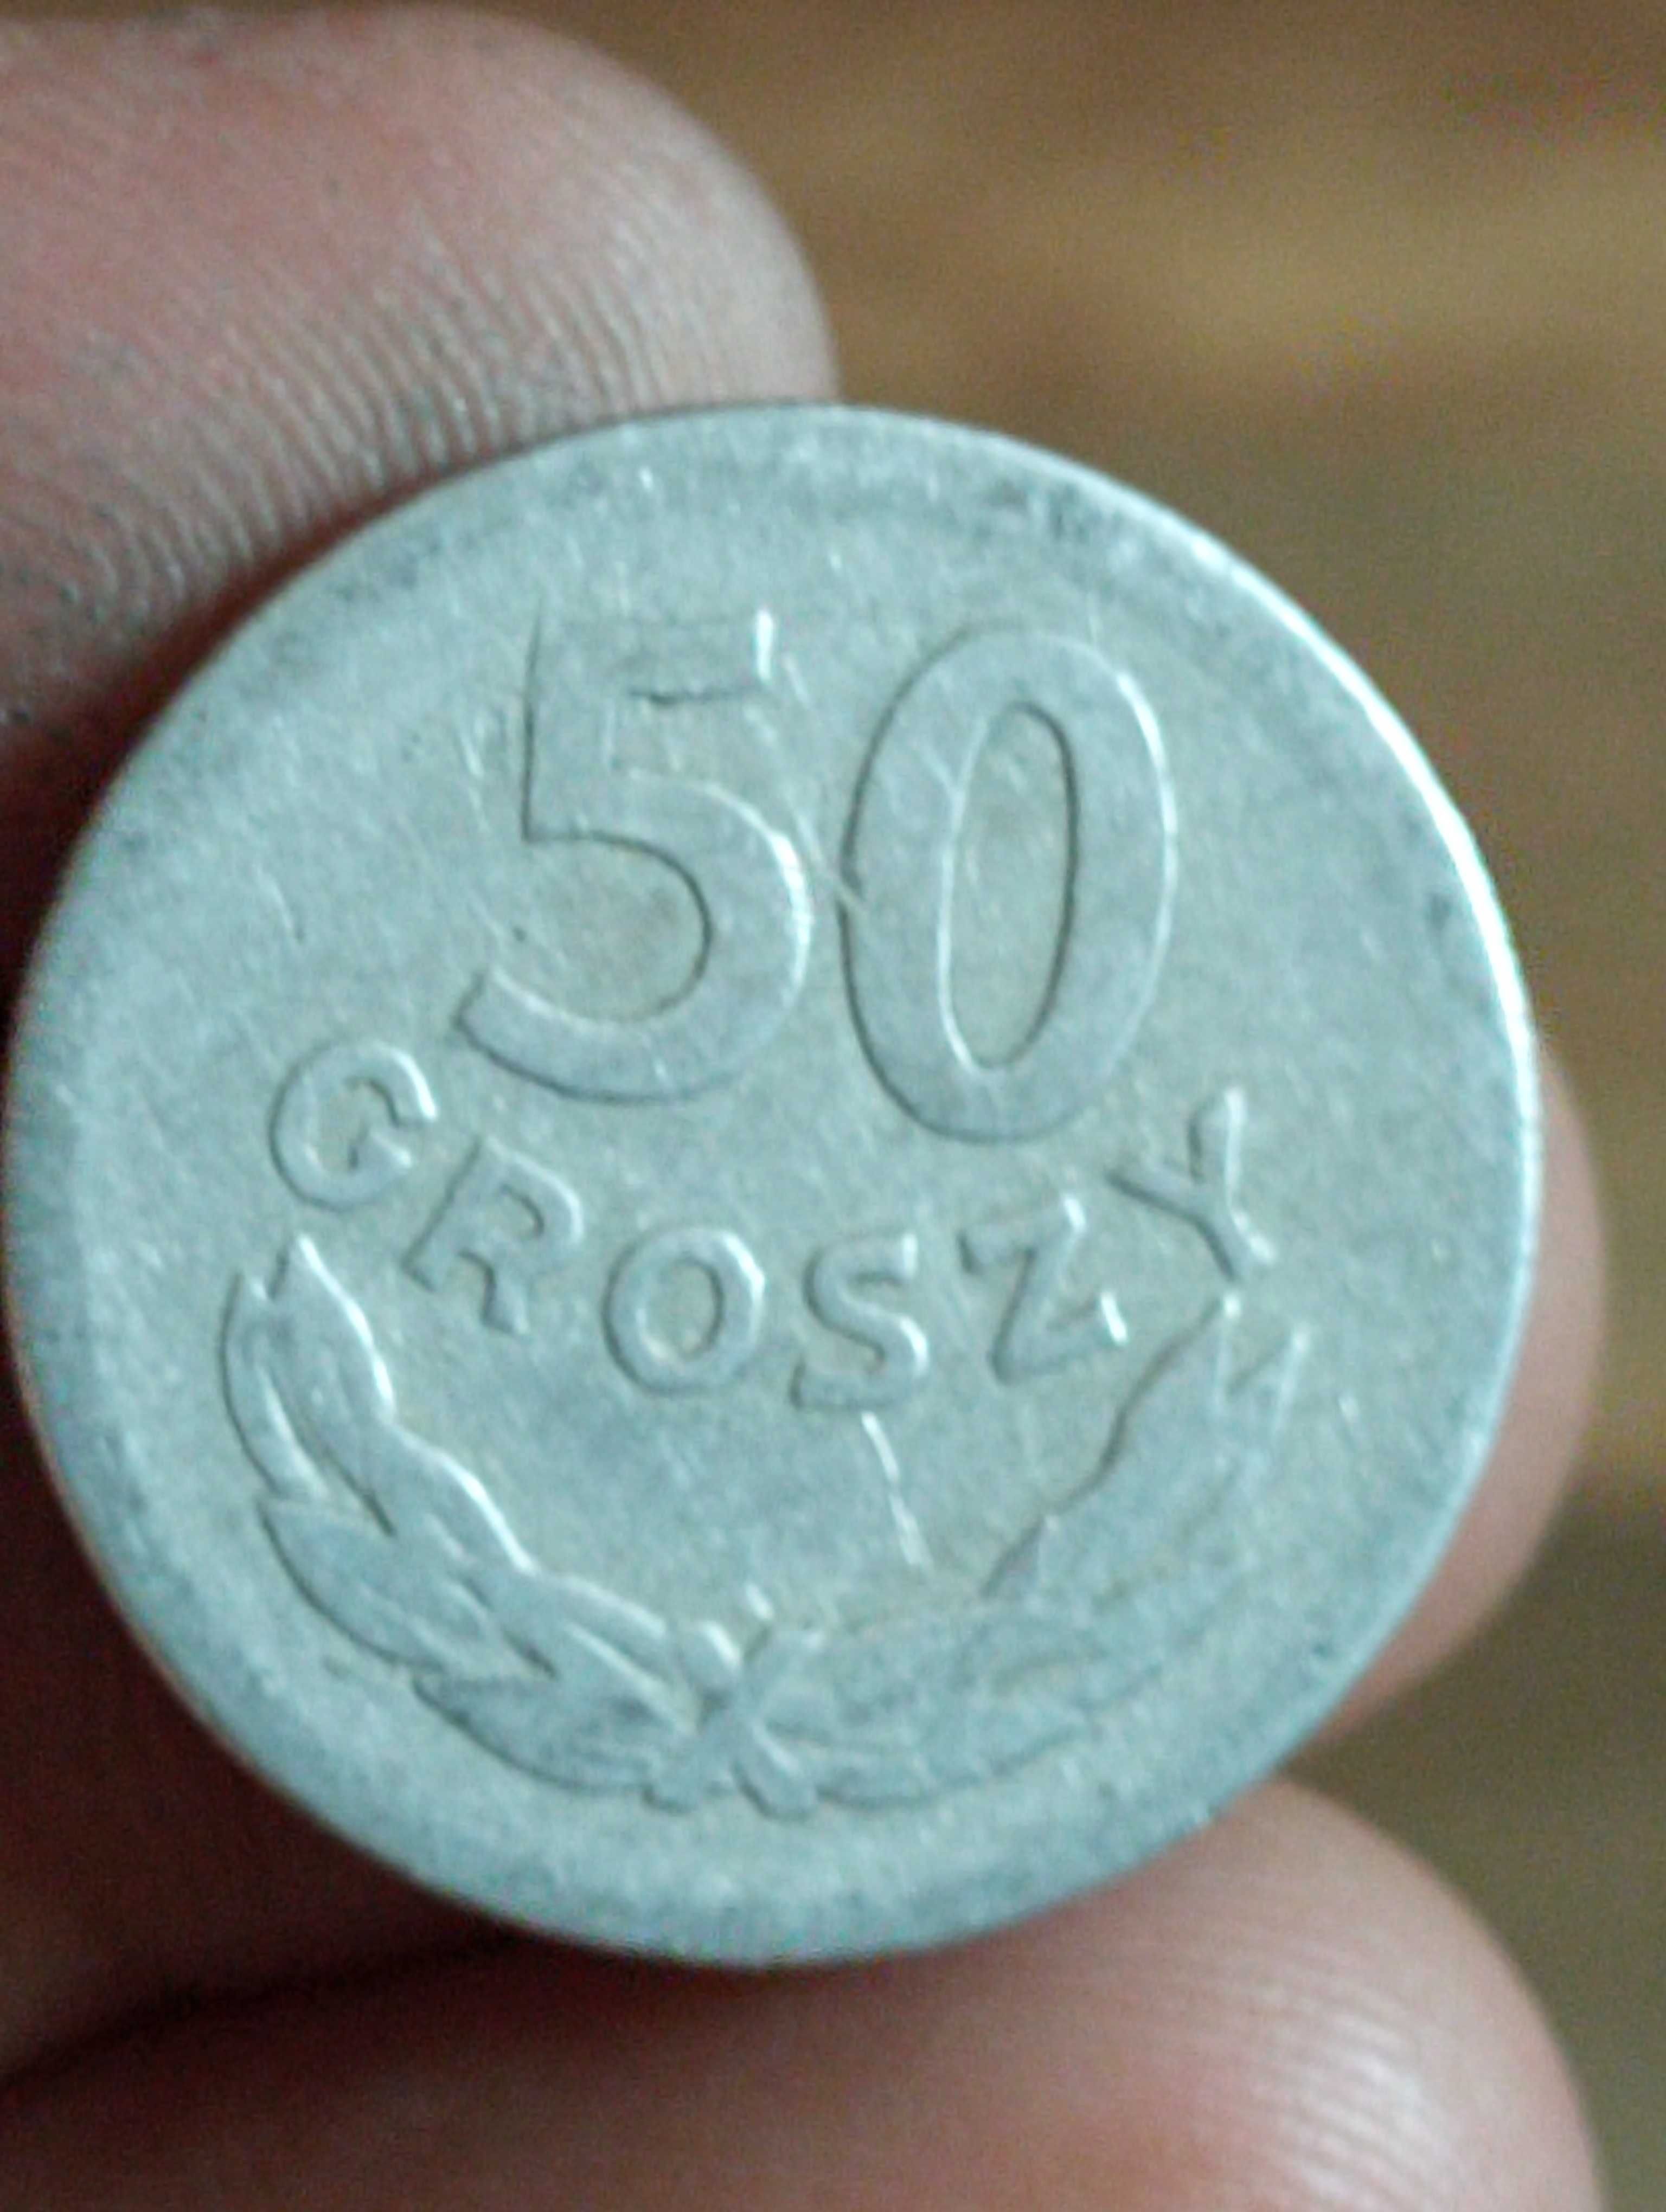 CV Sprzedam monete 50 groszy 1957 rok